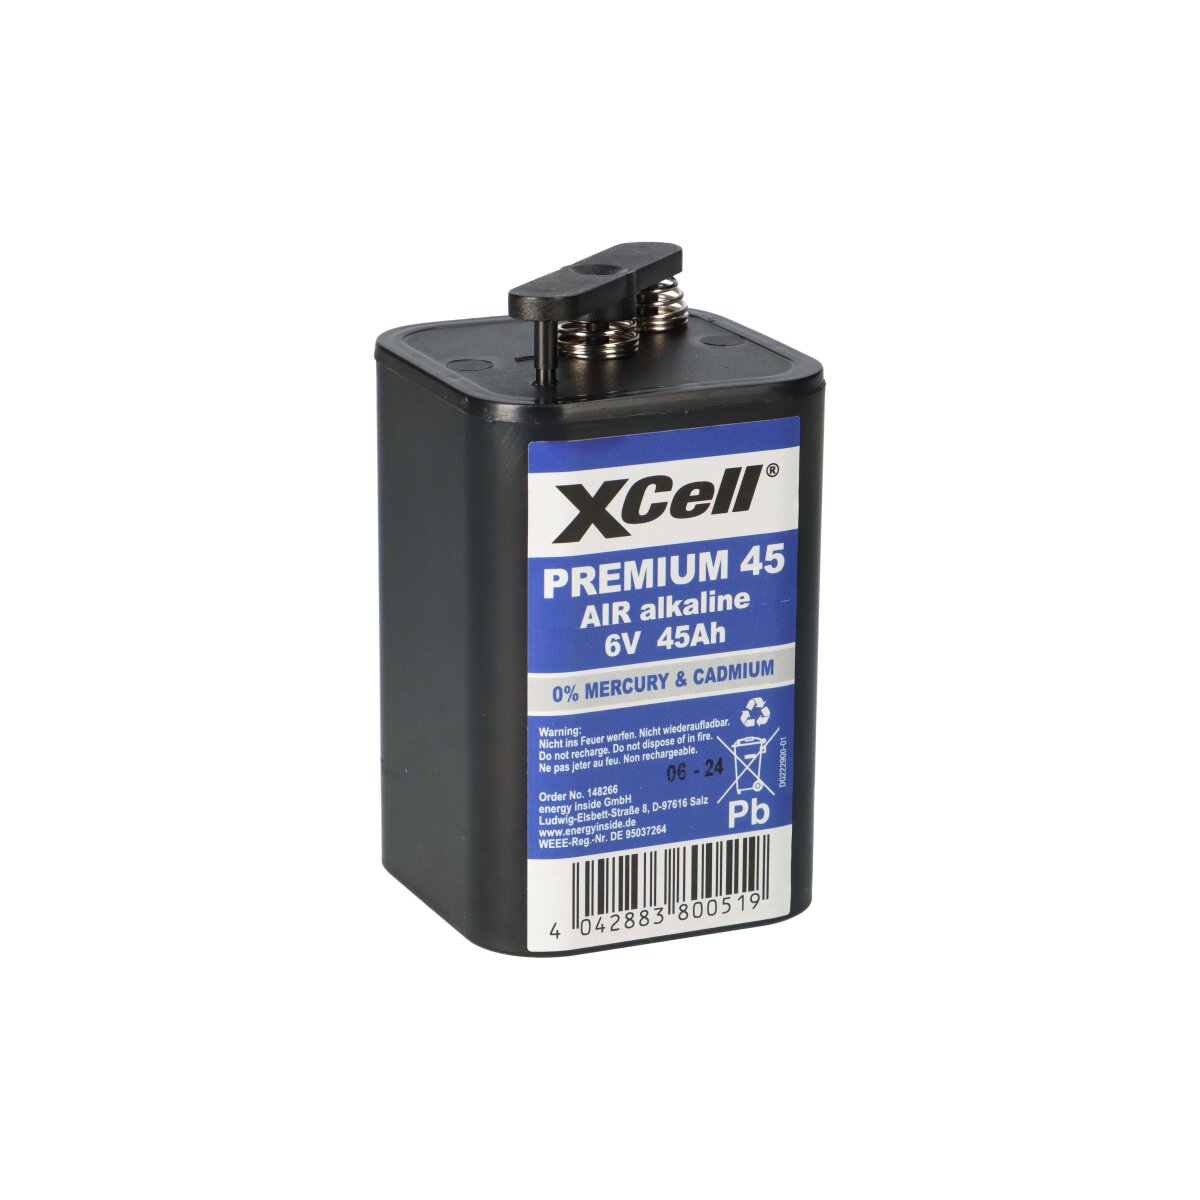 4R25 XCell Premium 45 Blockbatterie 6V 45Ah Baustellenlampe